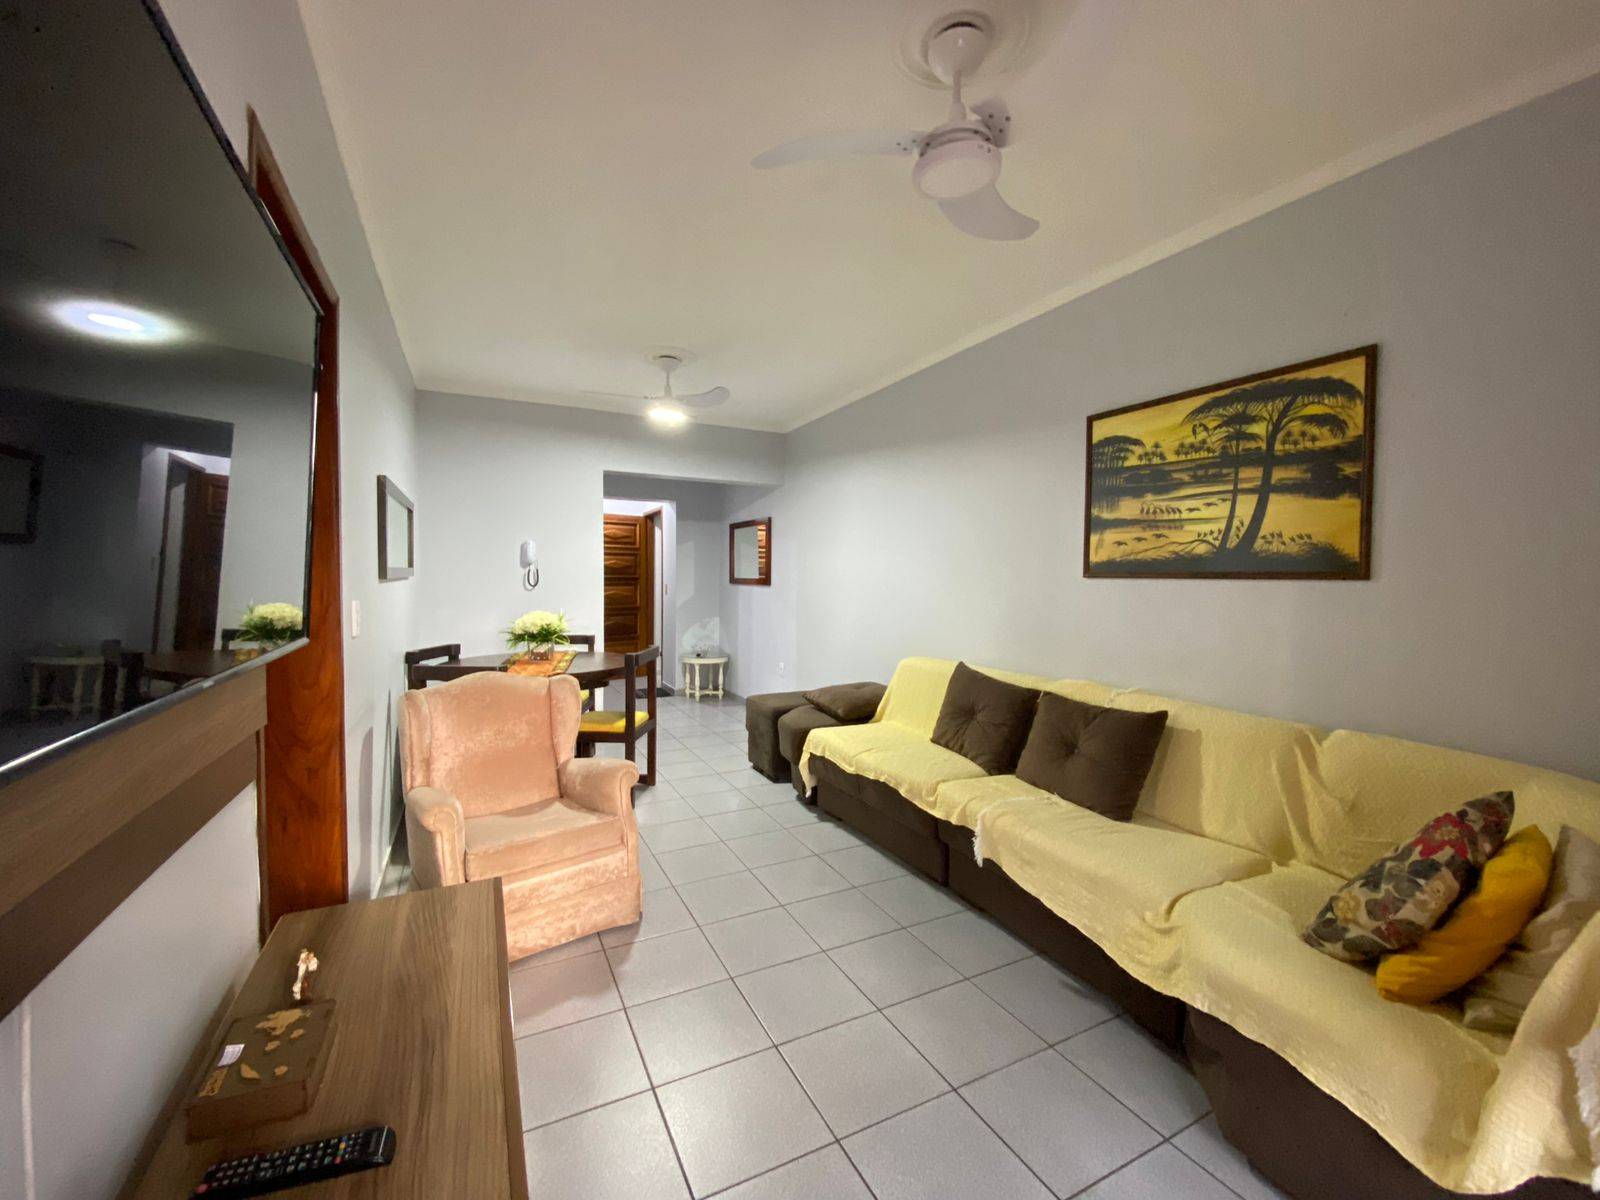 Apartamento 2 dormitórios em Capão da Canoa | Ref.: 4891